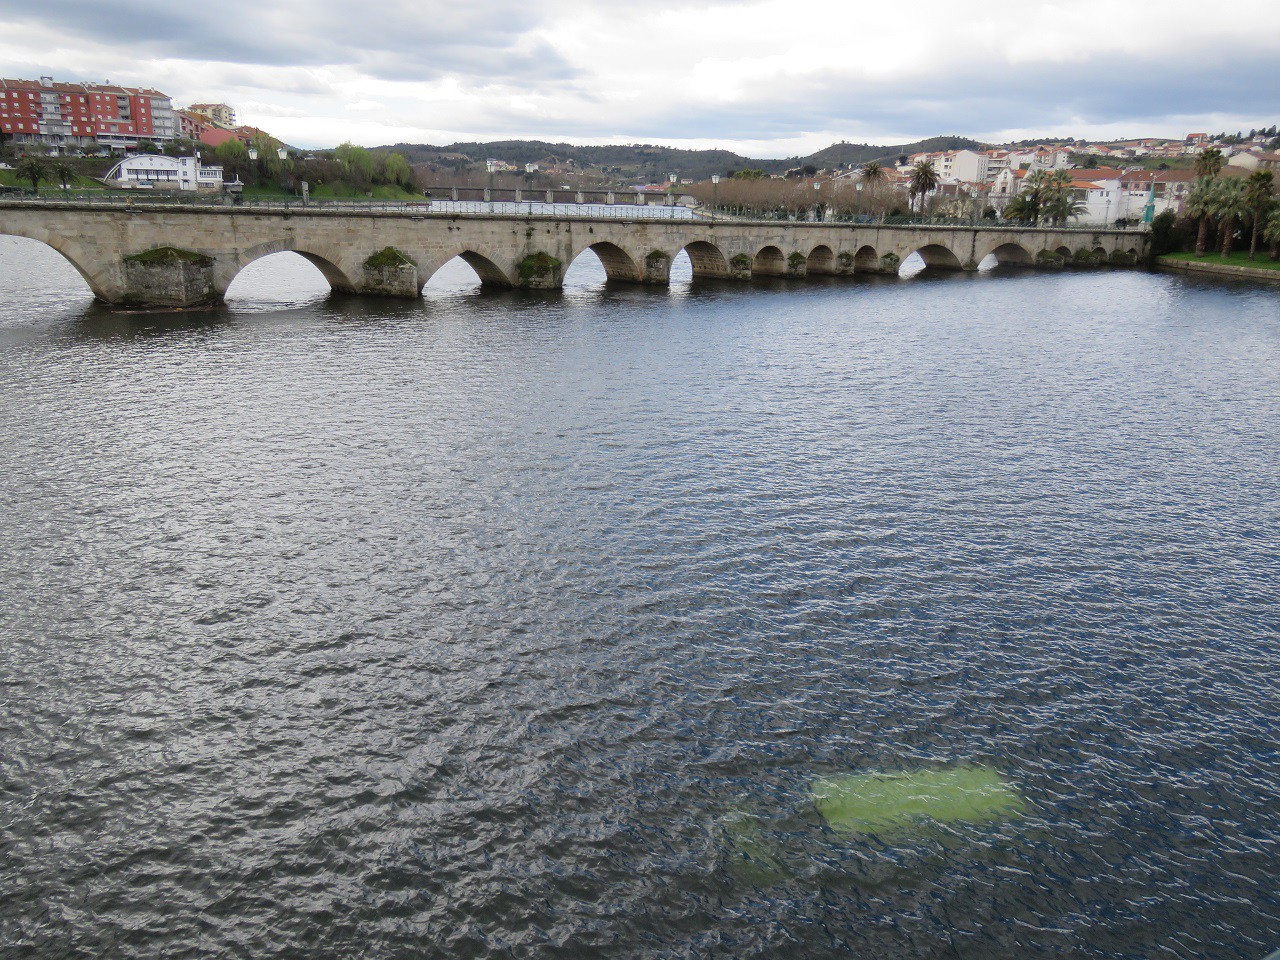 Viatura caiu ao rio Tua, junto à ponte romana em Mirandela